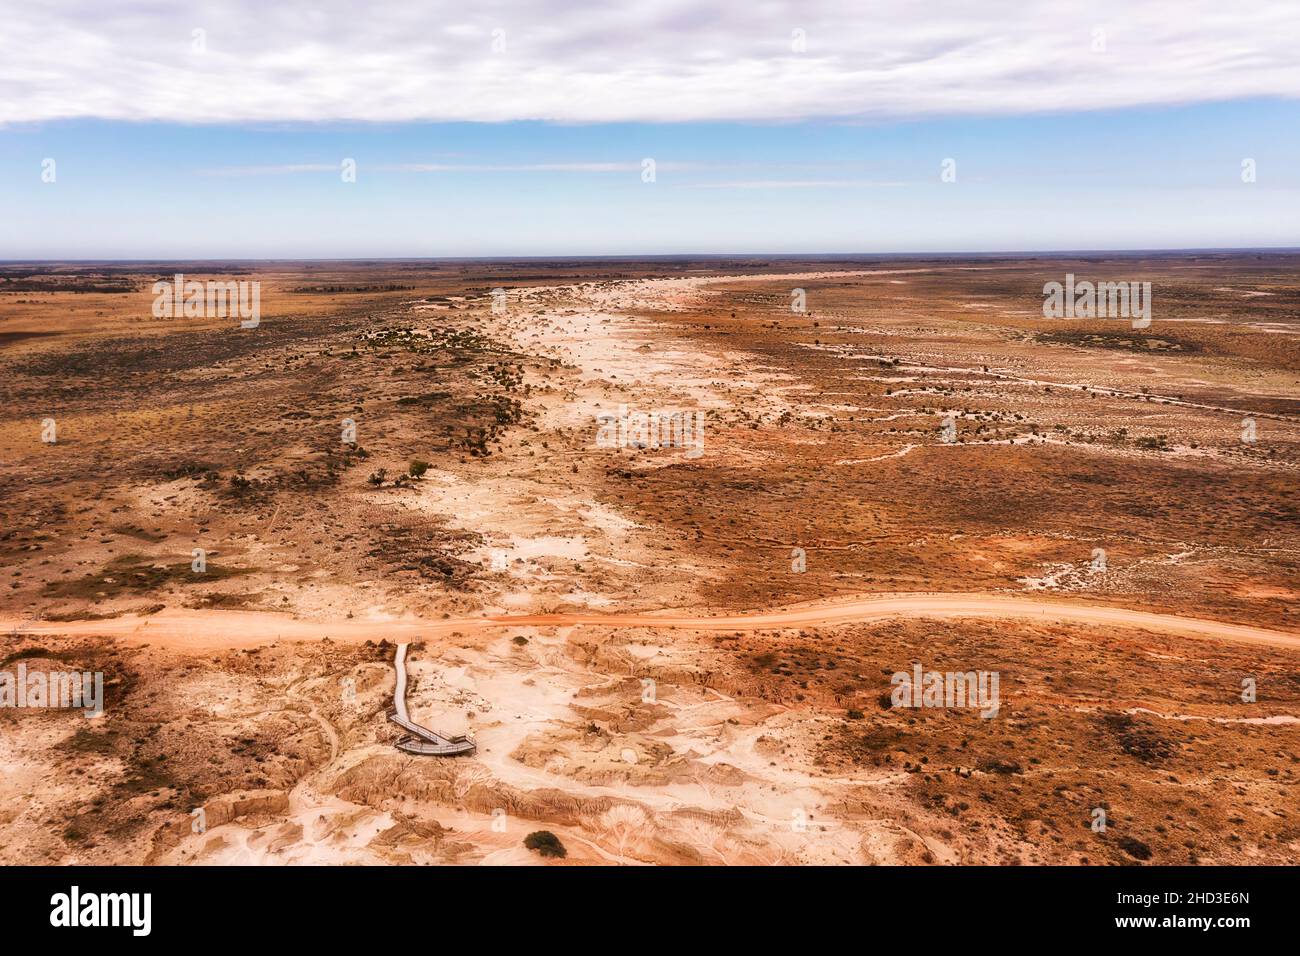 Trockene Wüste des Lake Mungo National Park in Australien - Luftaufnahme über unversiegelte Straße und landschaftlich schöner Aussichtspunkt. Stockfoto